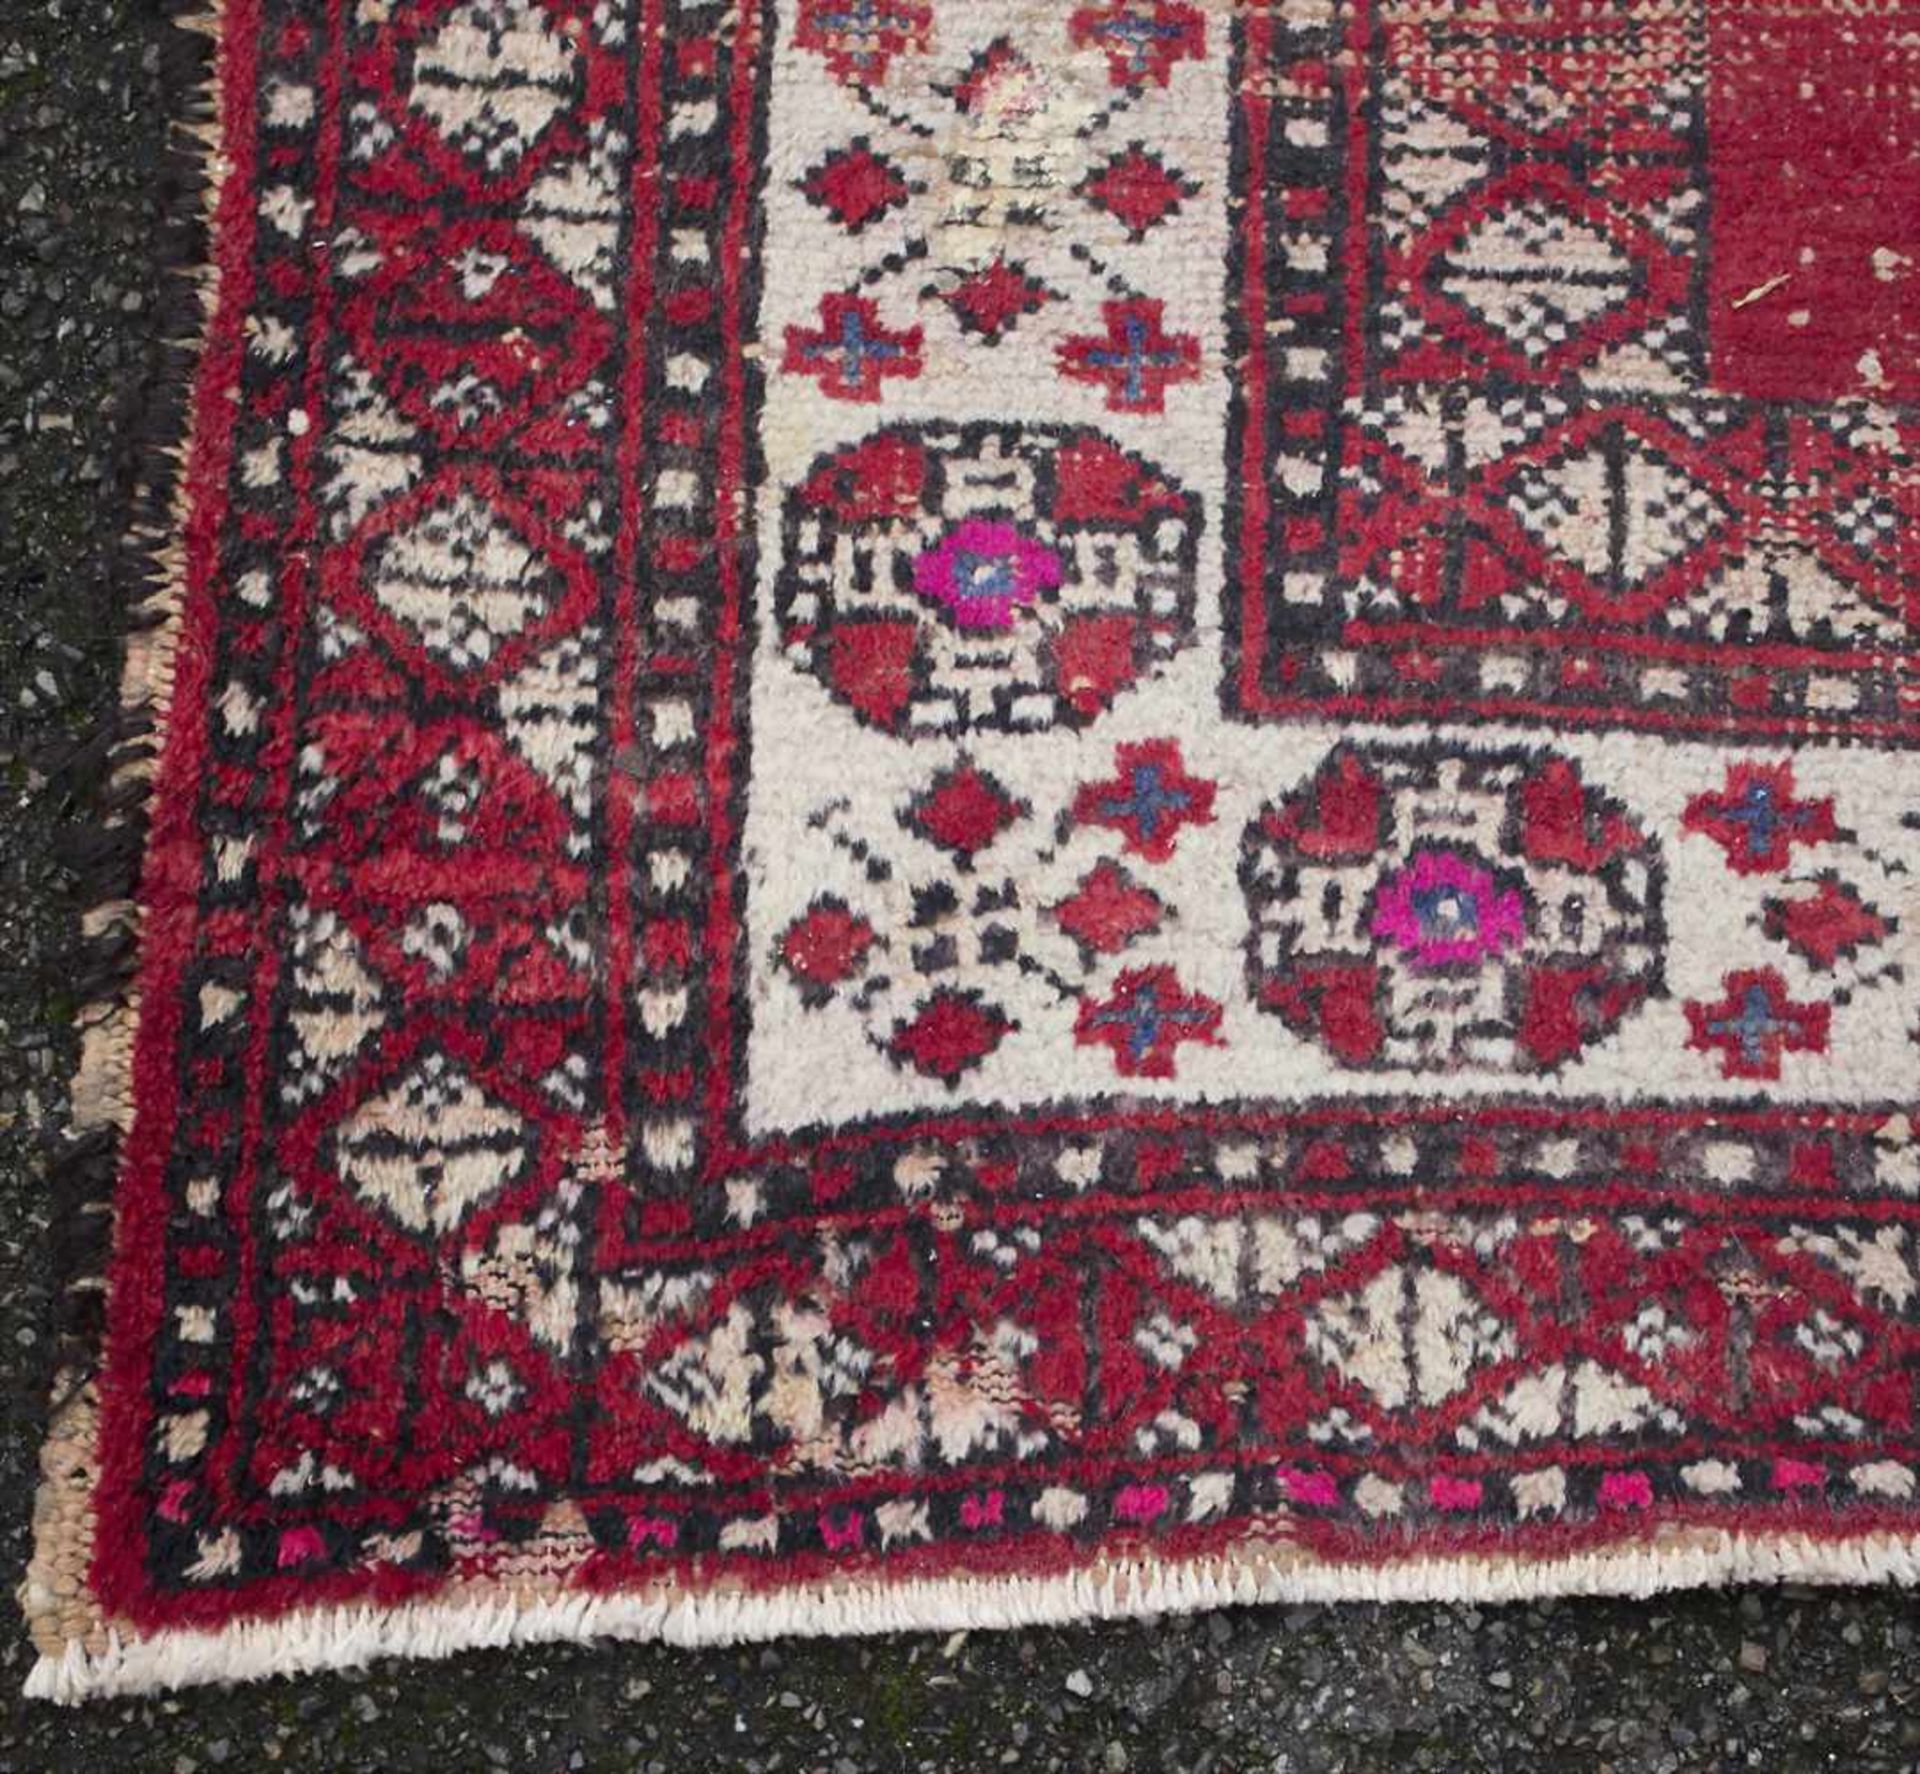 Orientteppich / An oriental carpetMaterial: Wolle auf Baumwolle, Maße: 208 x 122 cm, Zustand: - Bild 5 aus 5